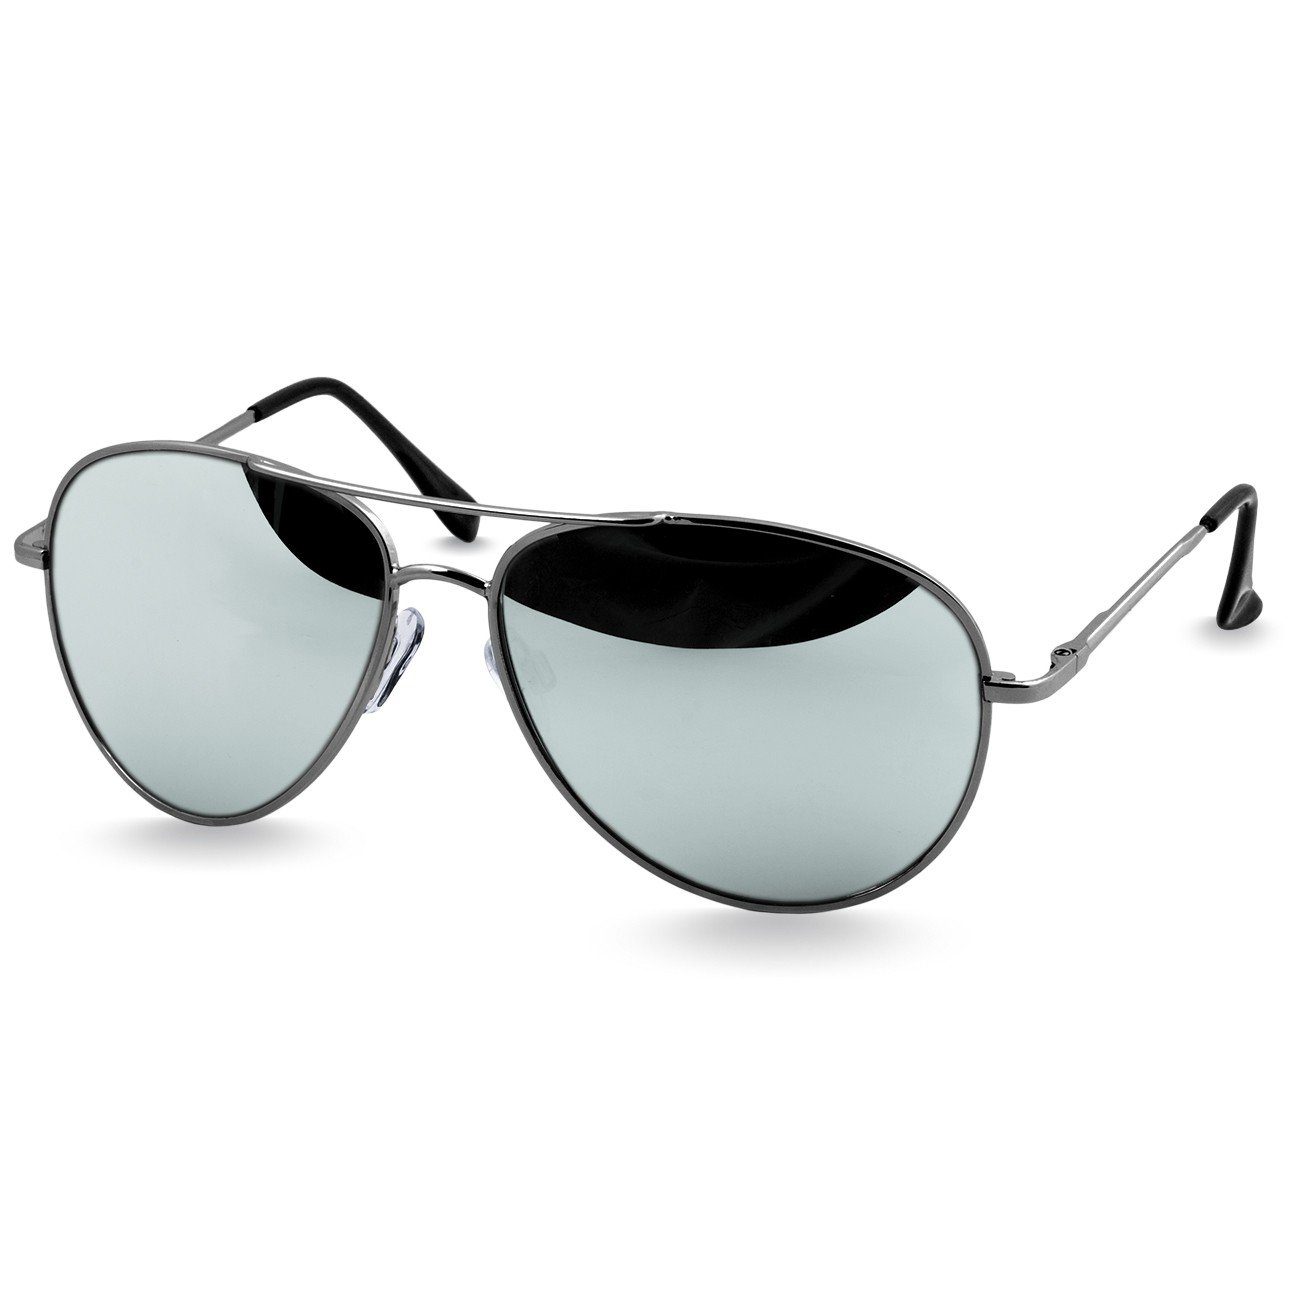 Caspar Sonnenbrille SG013 klassische Unisex Retro Pilotenbrille silber / silber verspiegelt